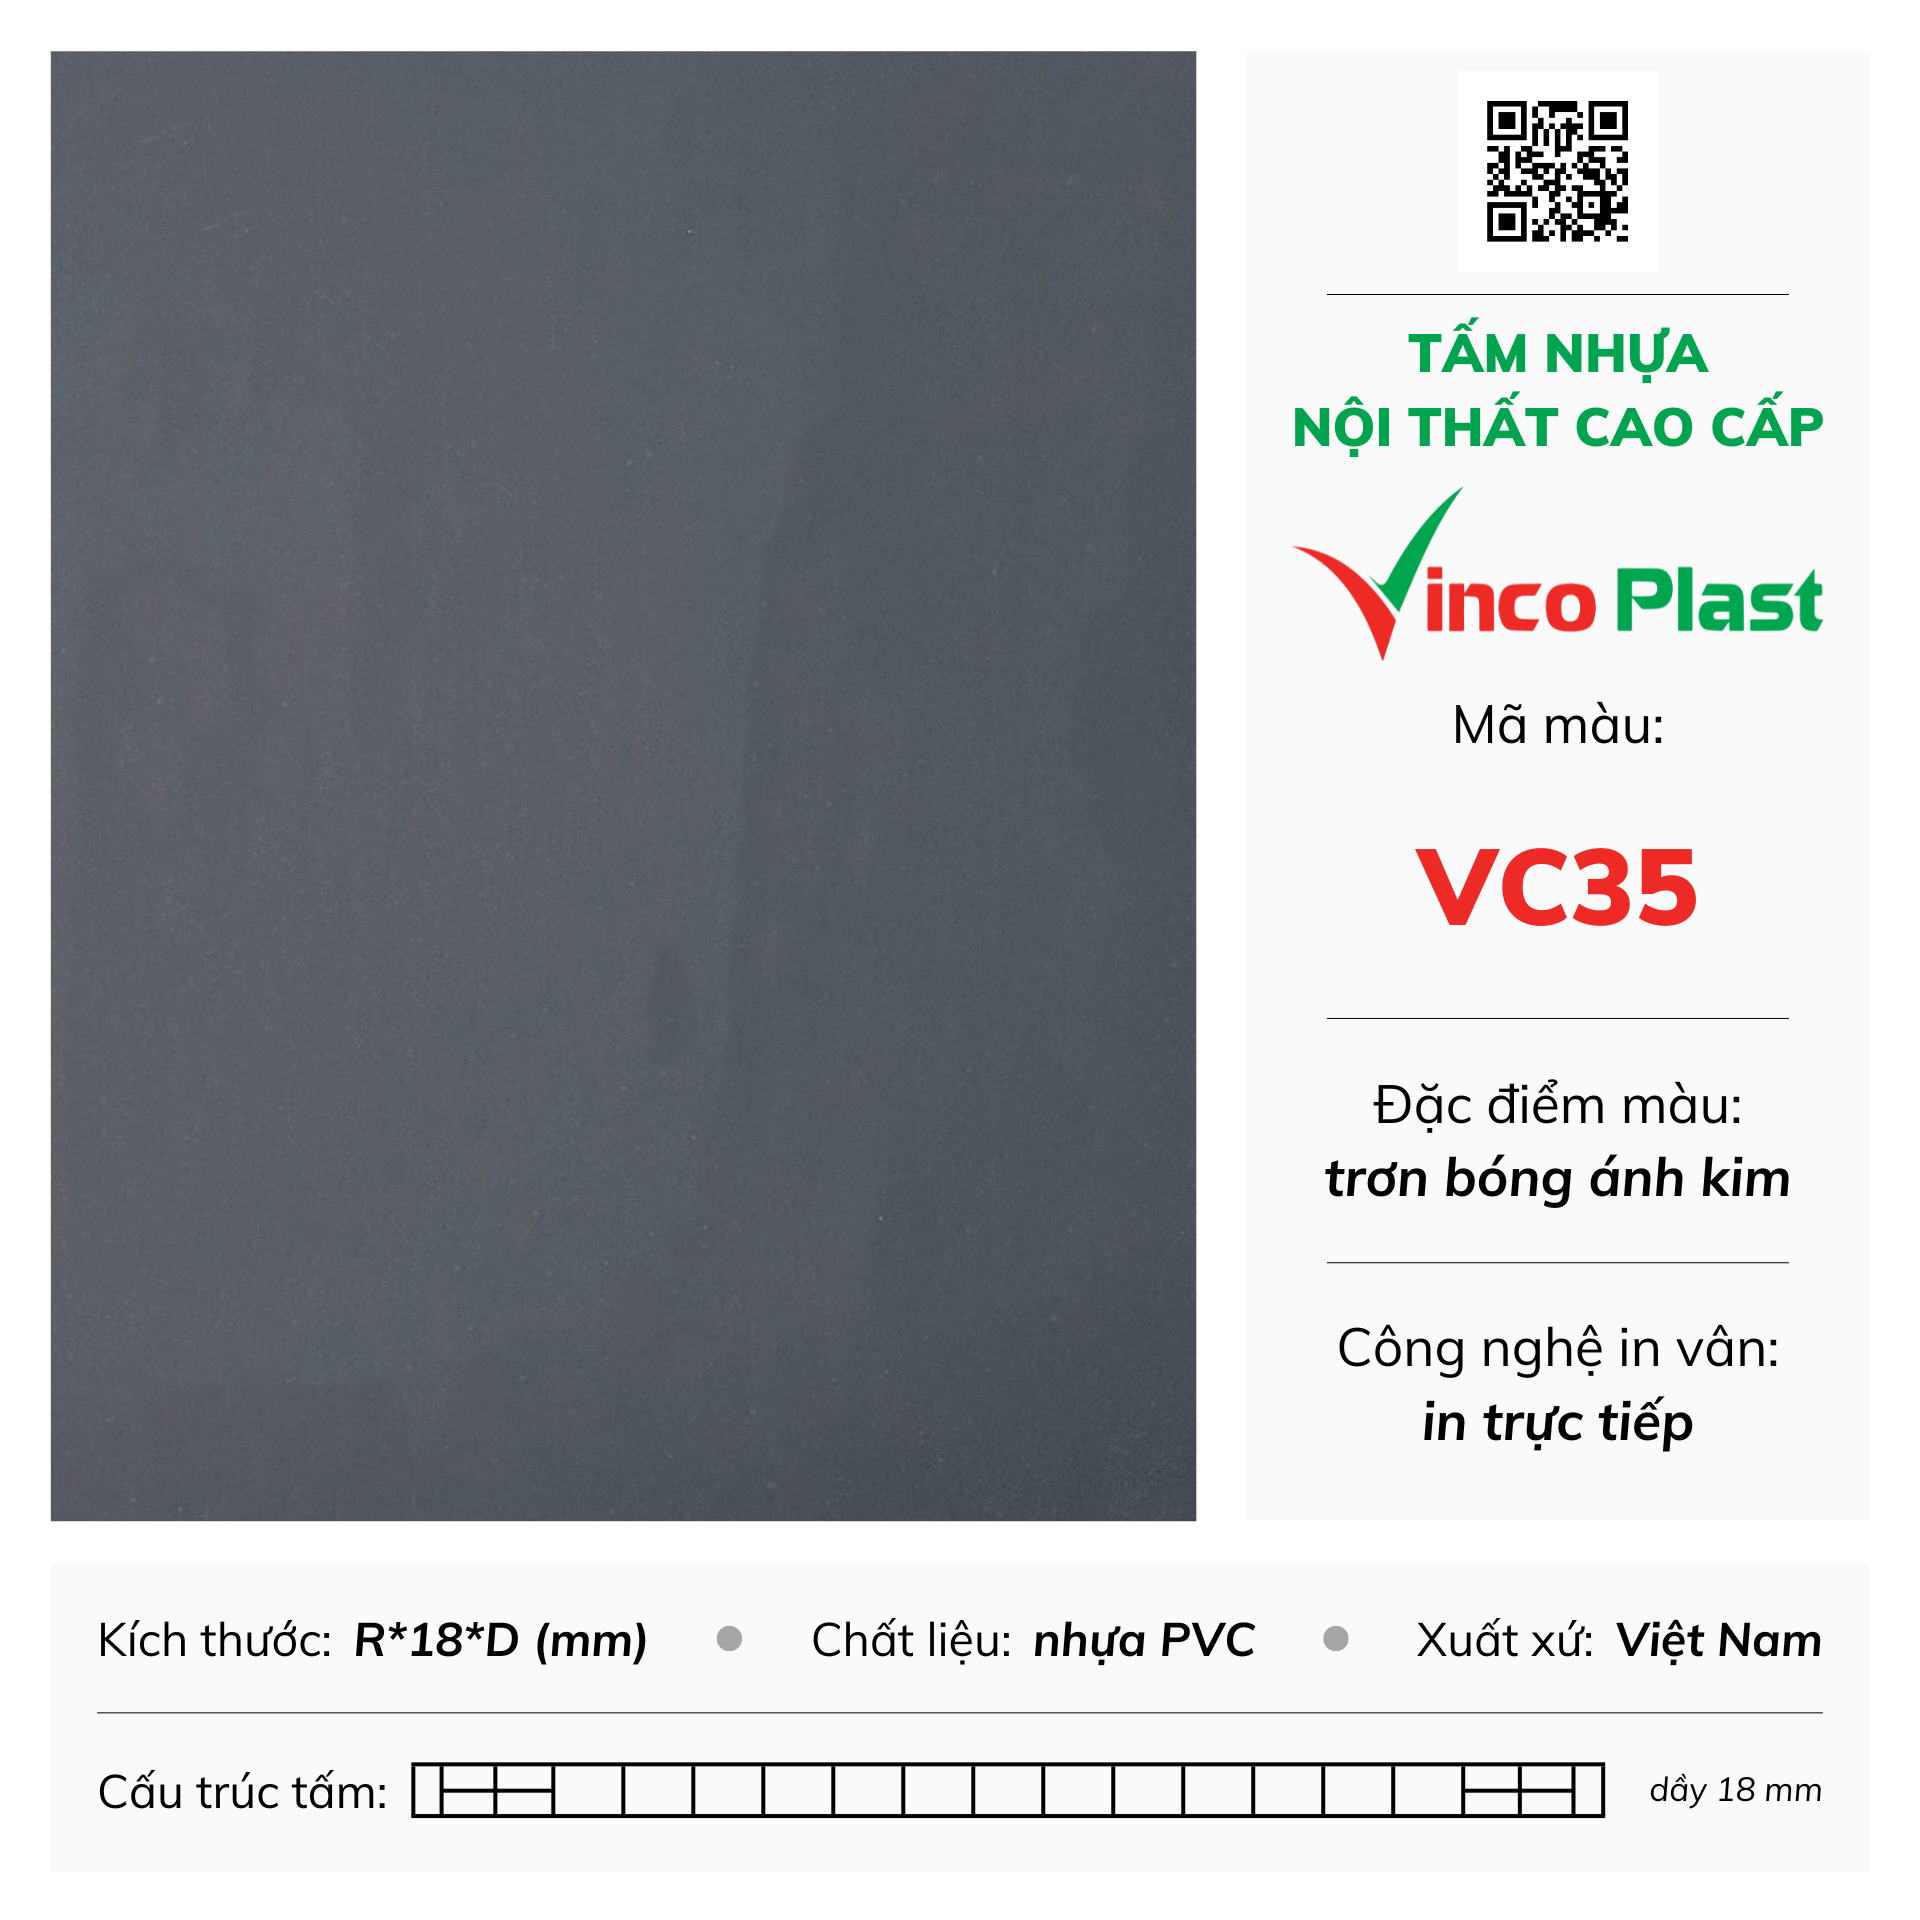 Tấm nhựa nội thất cao cấp Vincoplast màu vc35